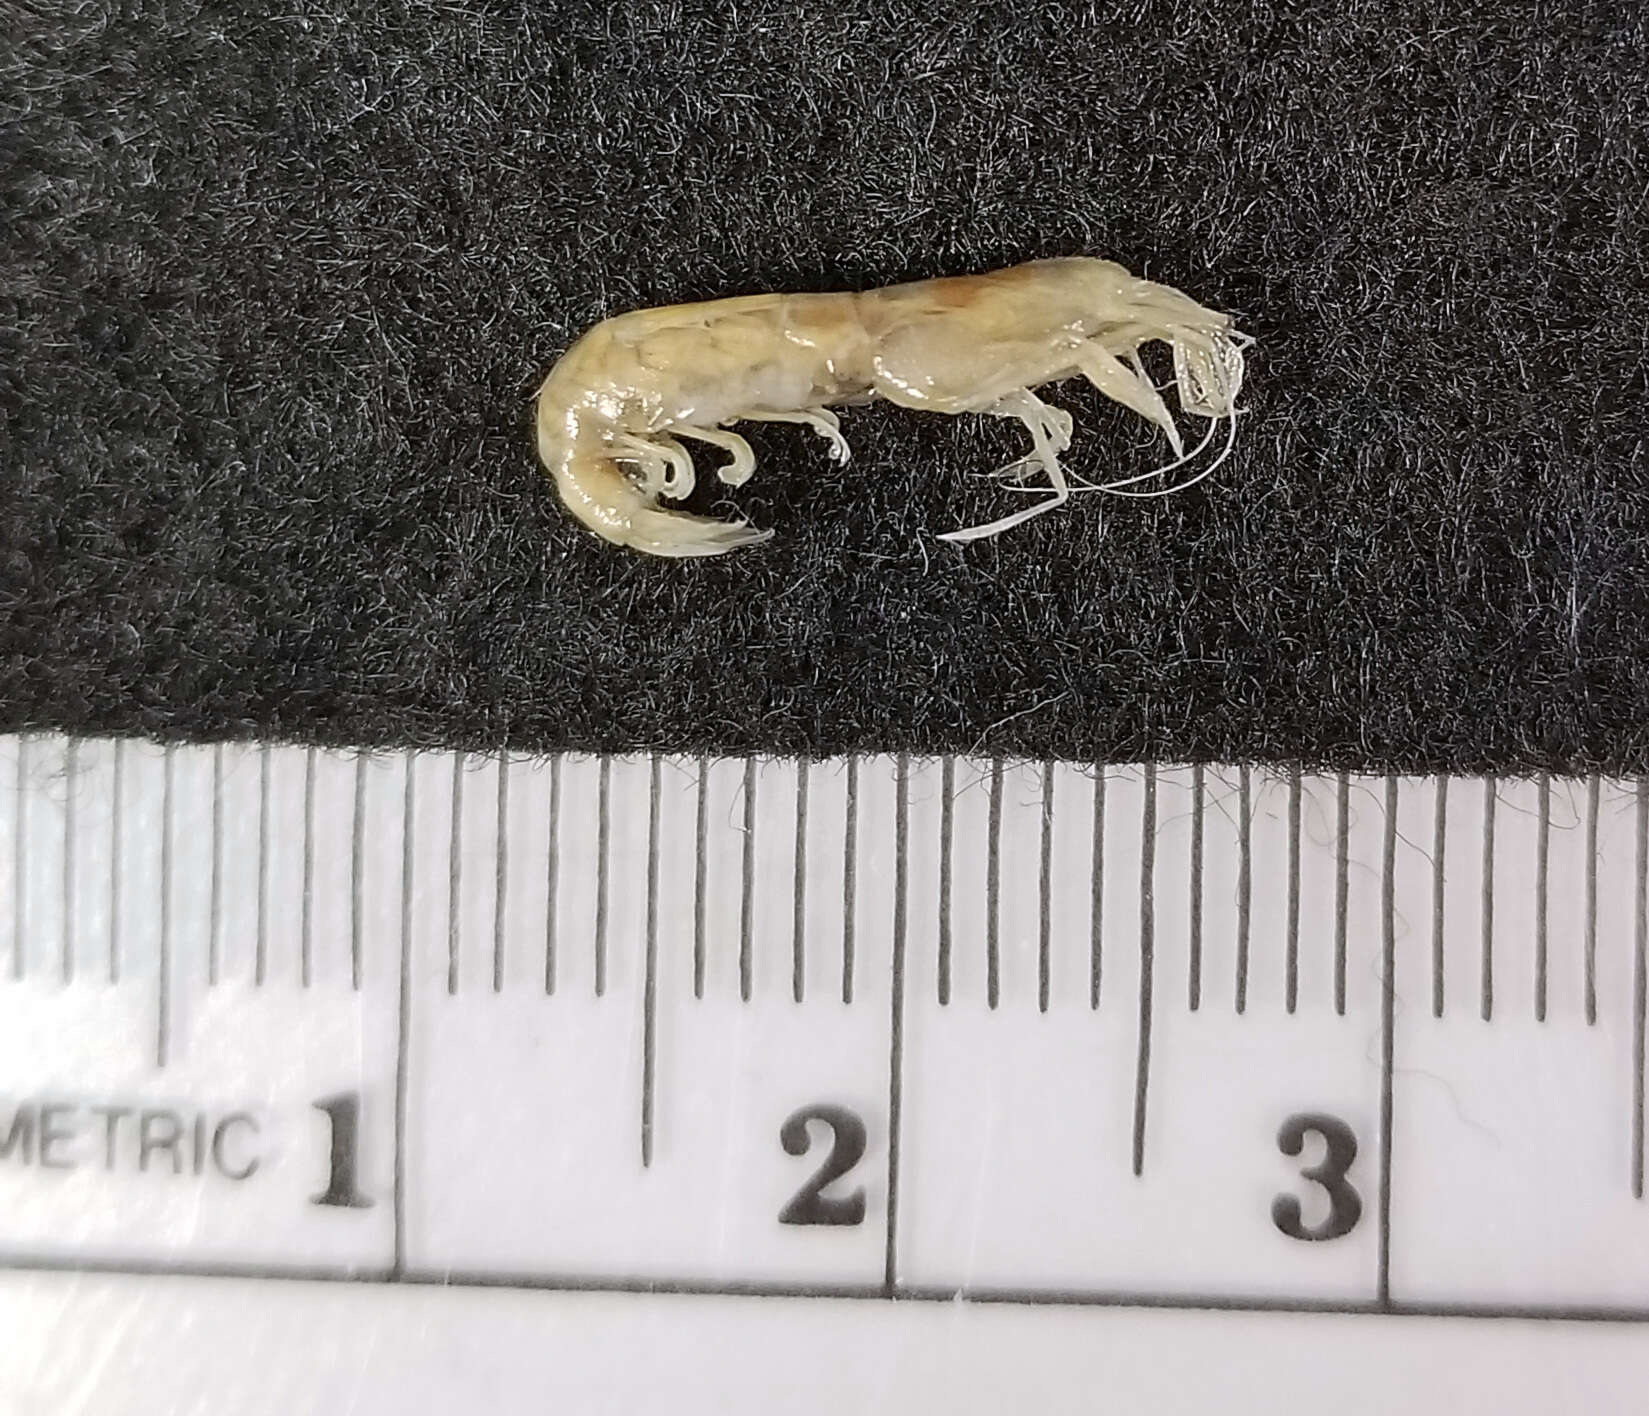 Image of estuarine long-eyed shrimp